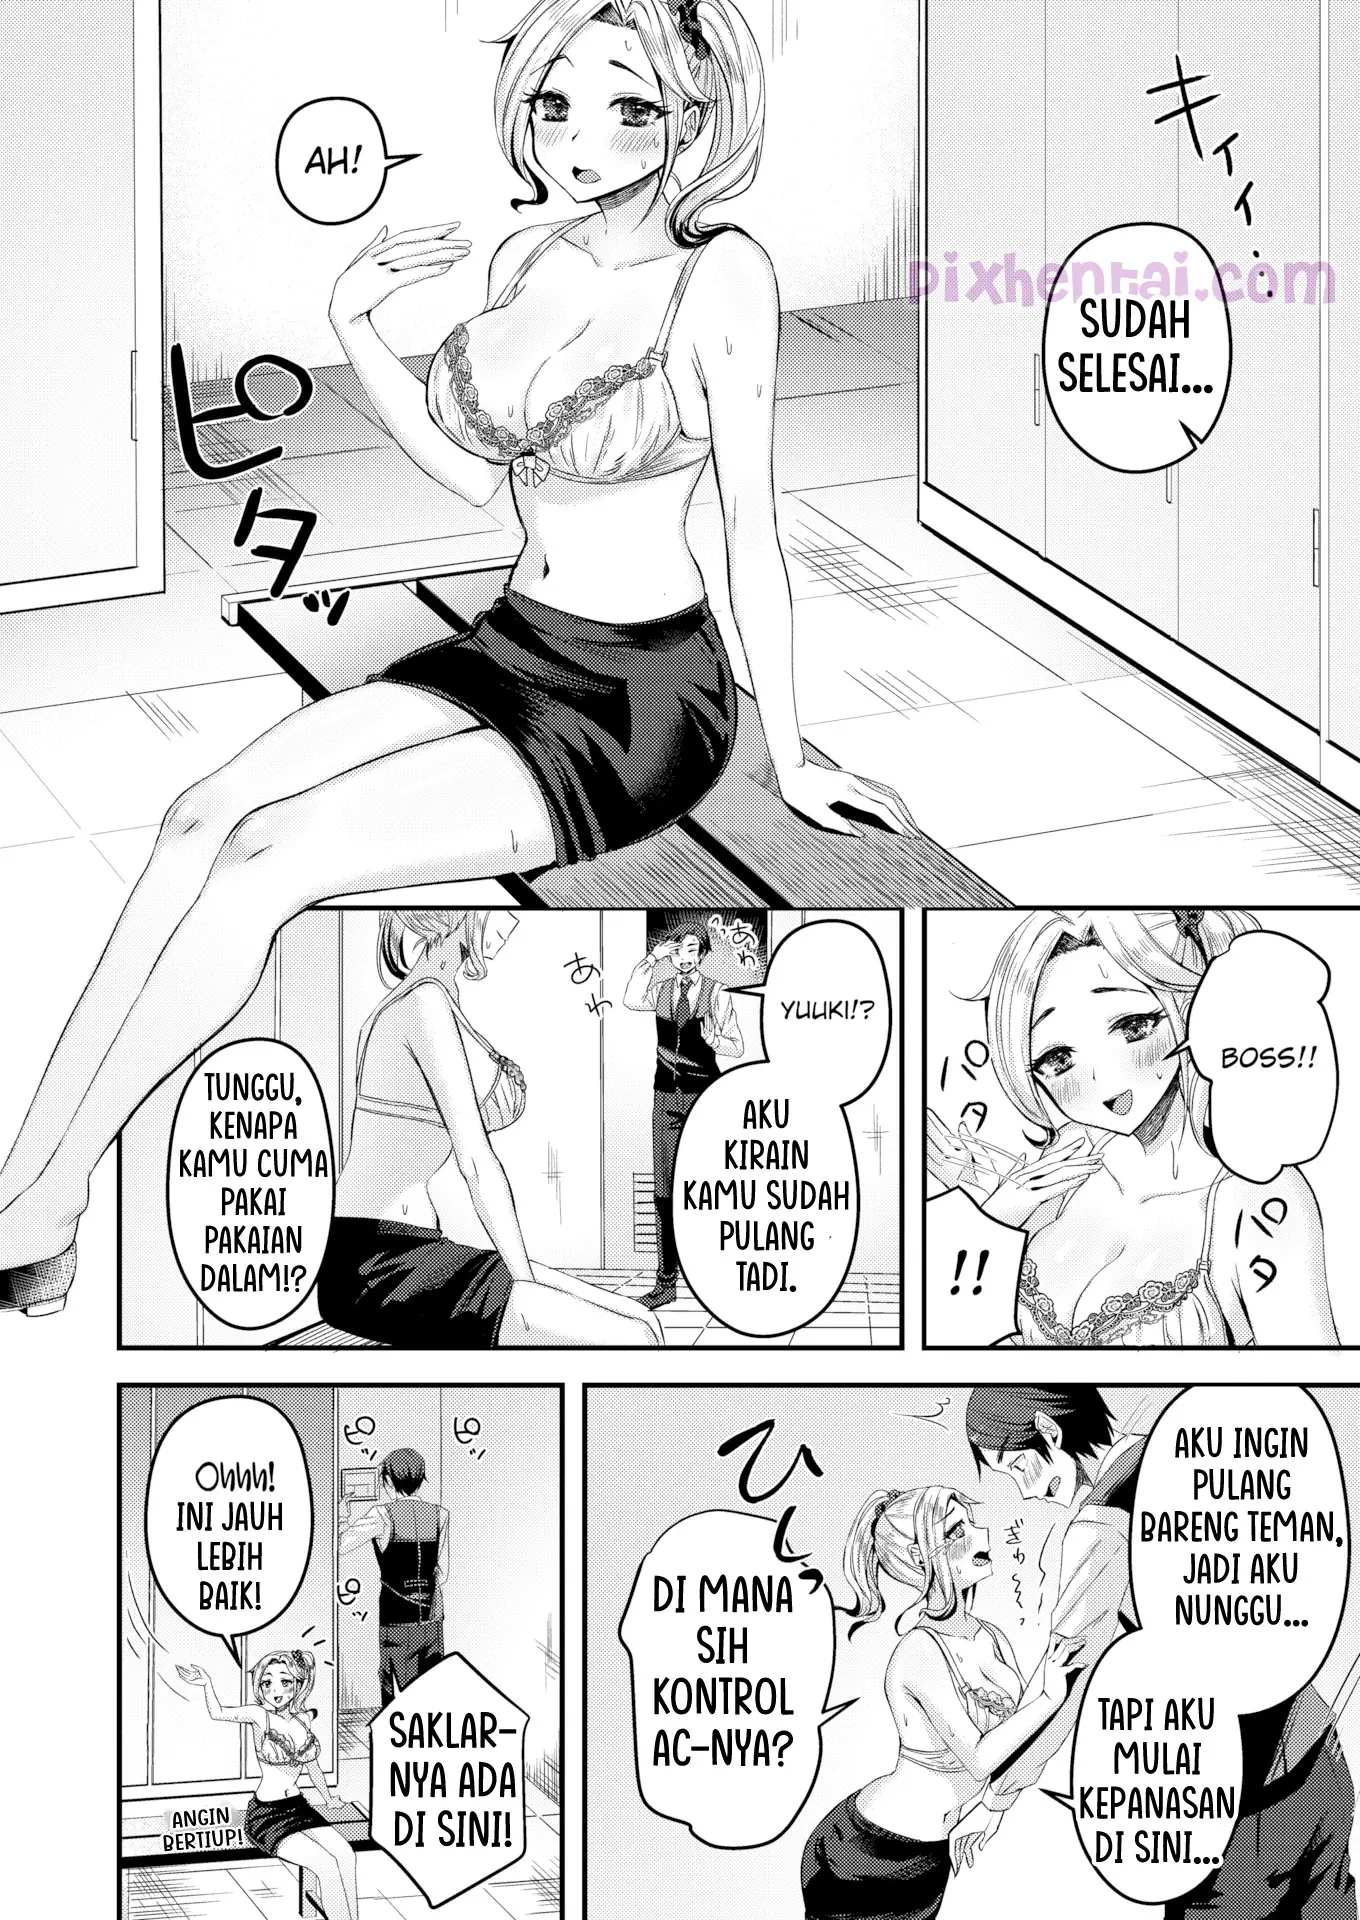 Komik hentai xxx manga sex bokep Love at First Sight Bashful Doggy Style 6